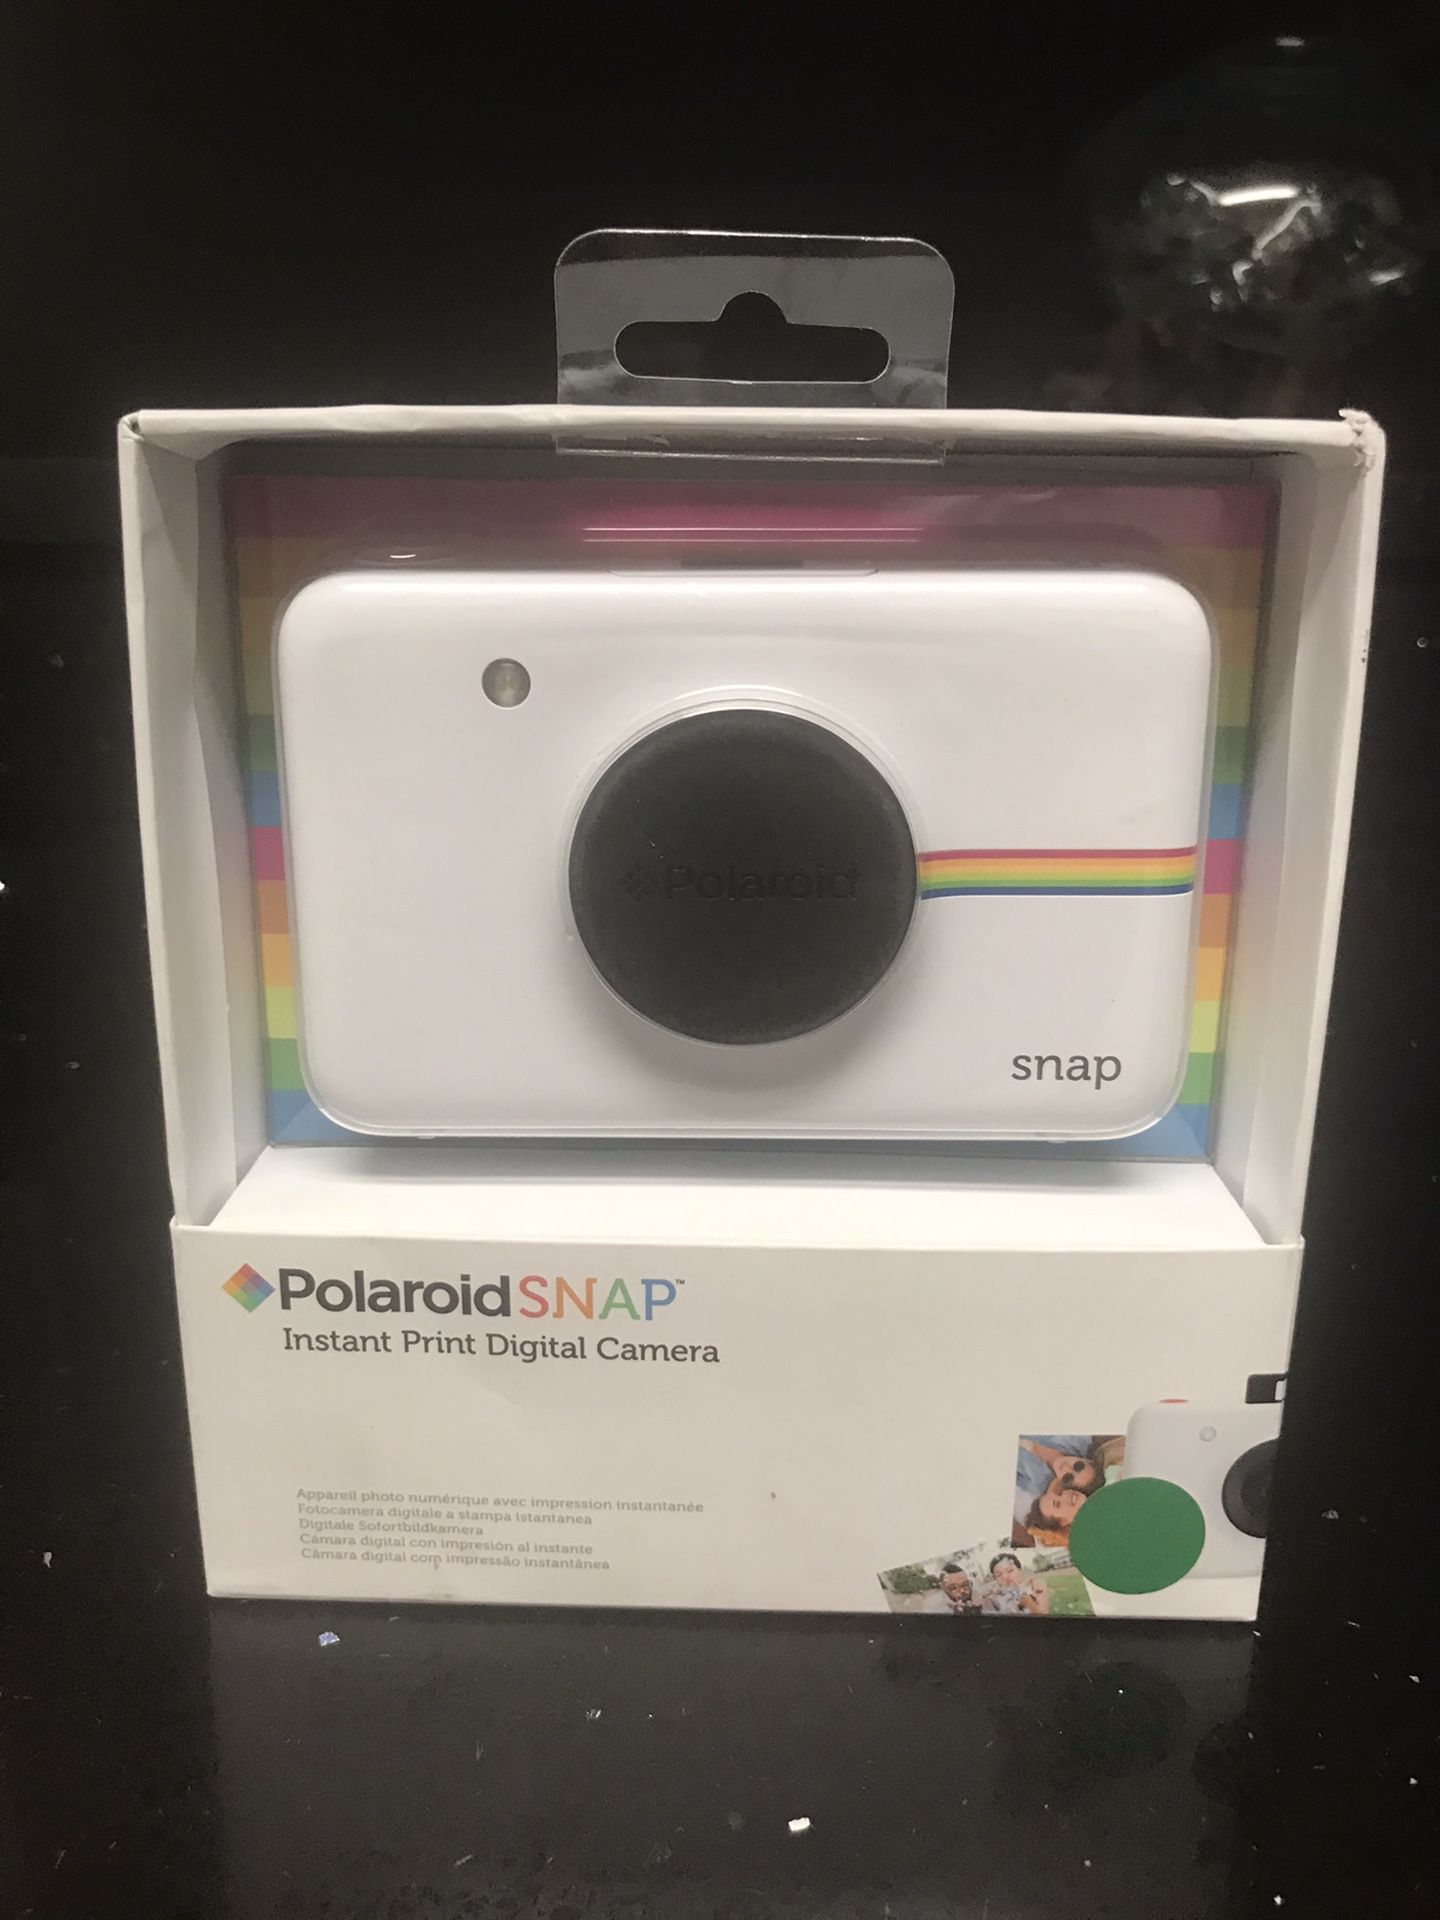 Polaroid SNAP new camera